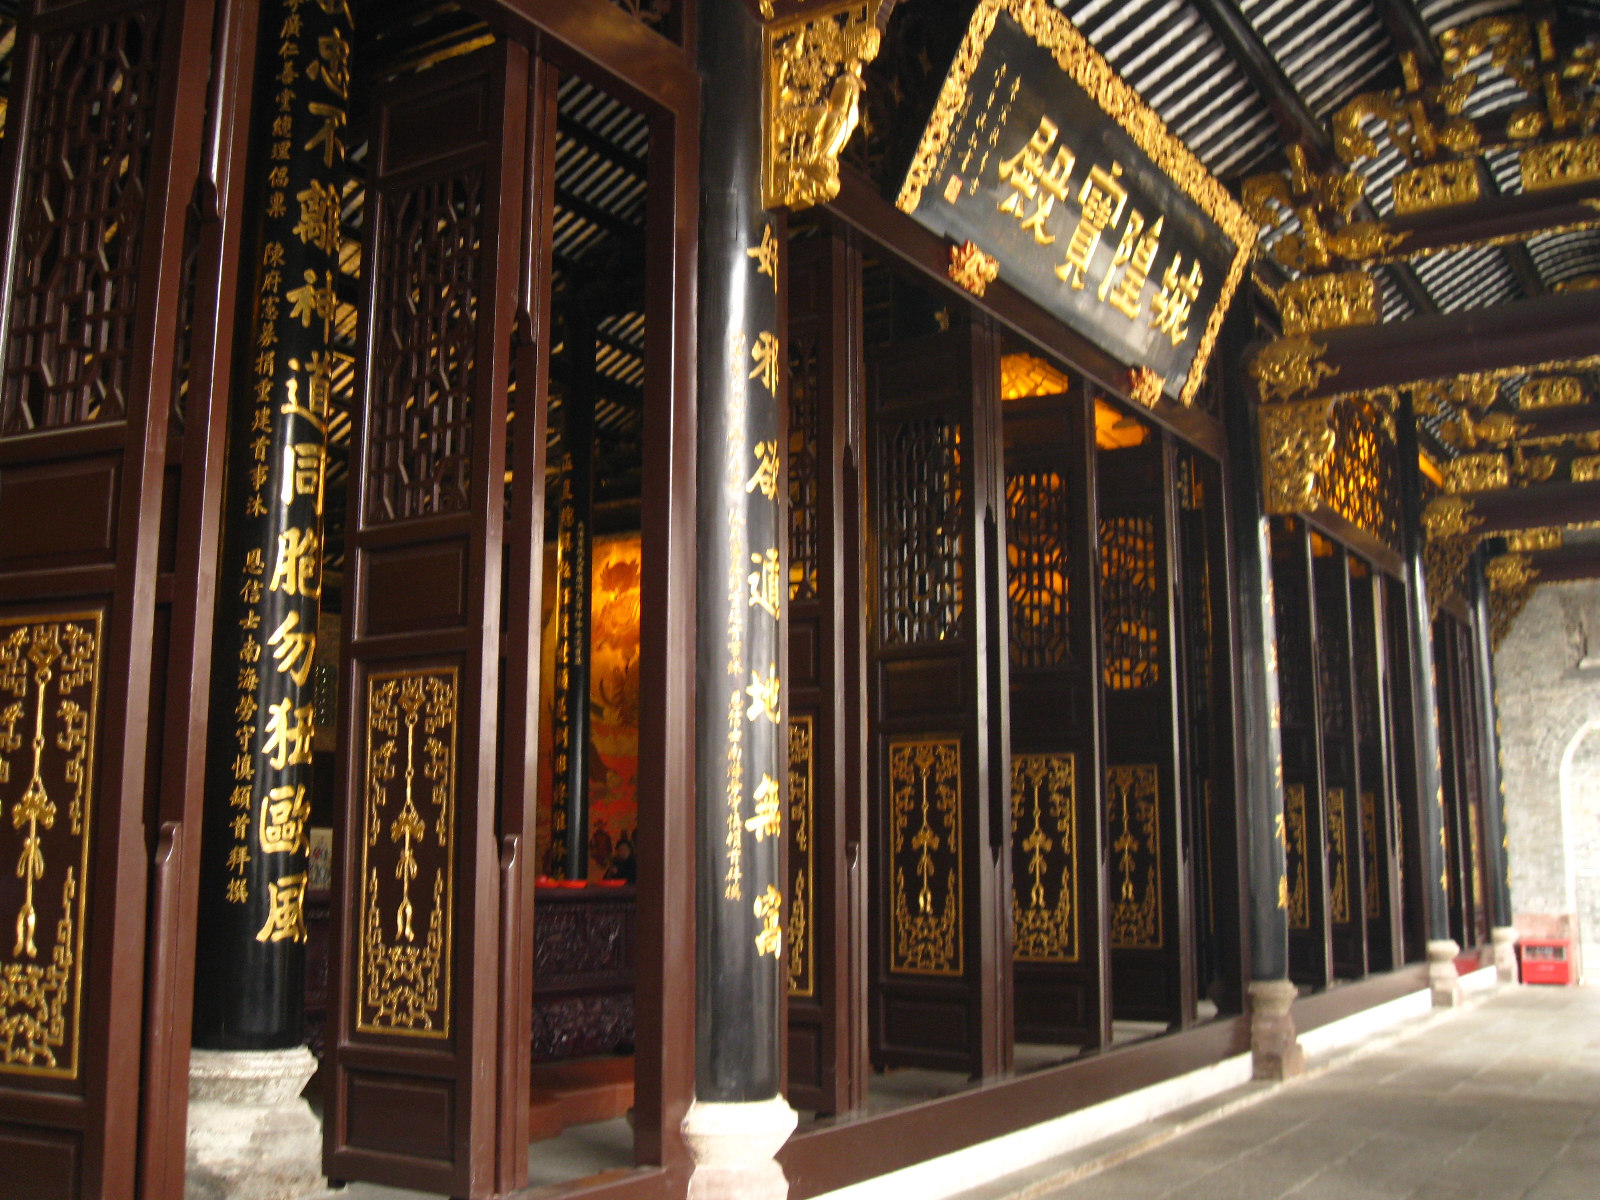 城隍庙旁边是广州南越王宫博物馆,时间充裕的朋友可以连带游览.